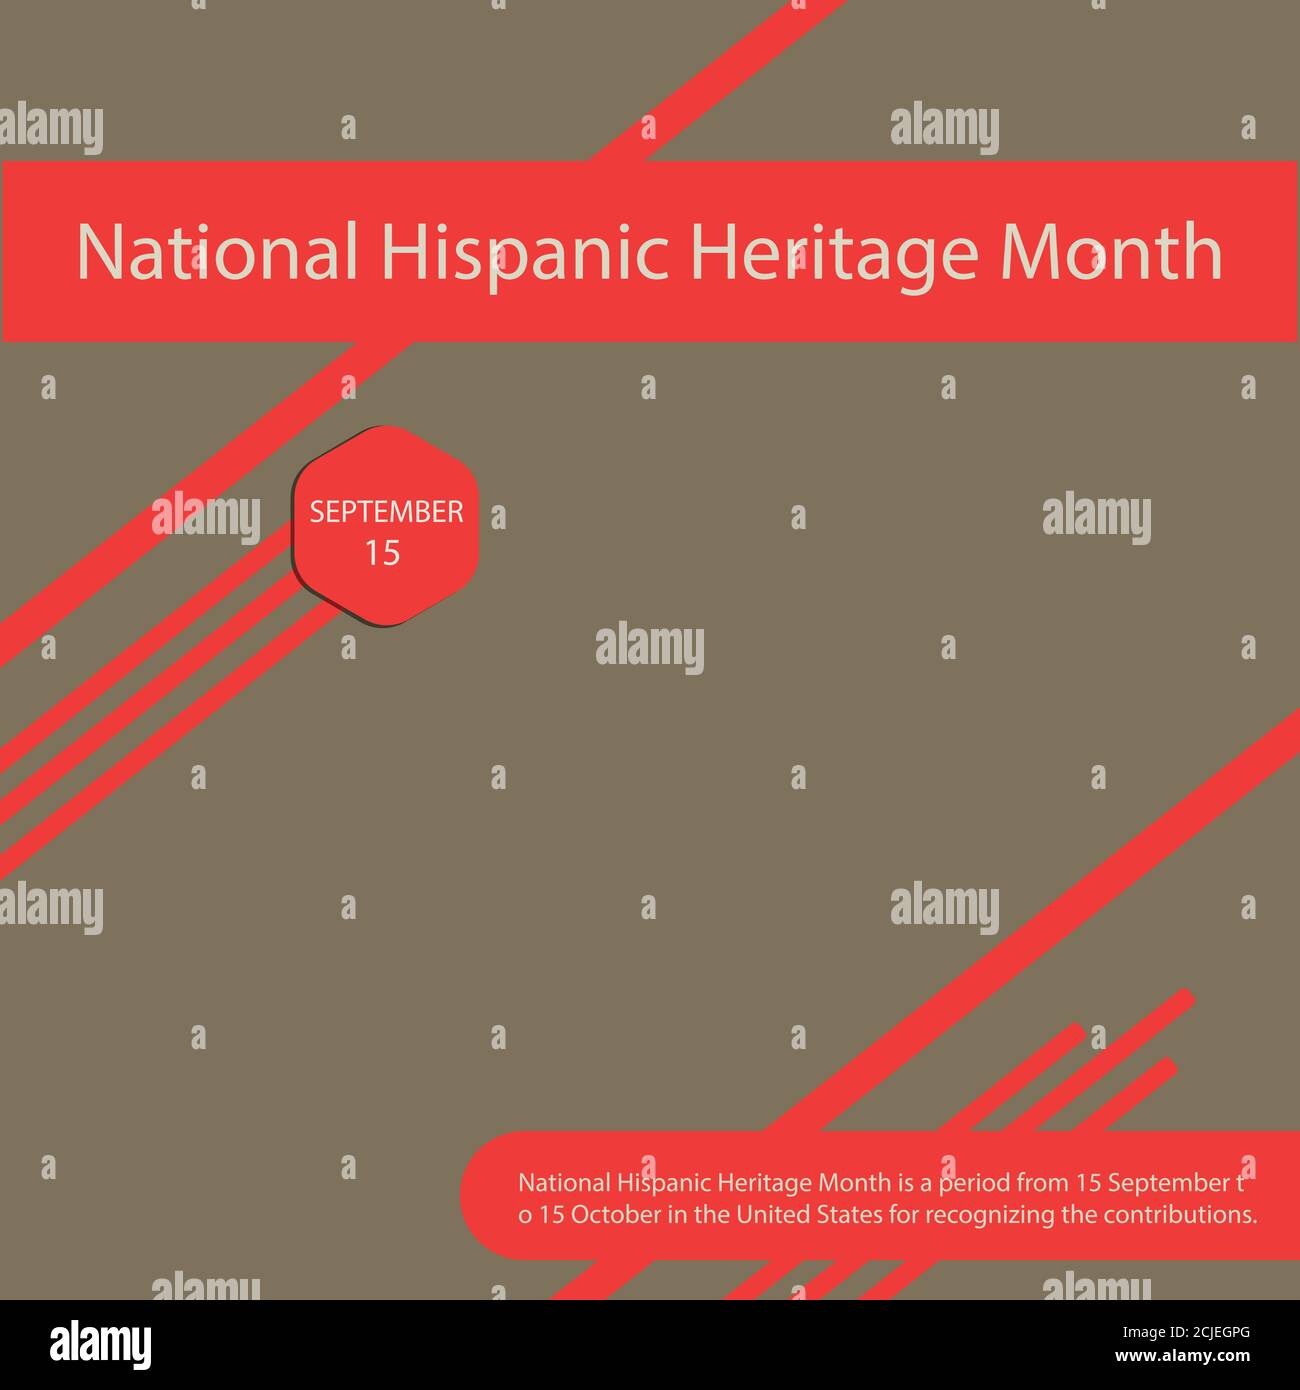 El Mes Nacional de la Herencia Hispana es un período del 15 de septiembre al 15 de octubre en los Estados Unidos para reconocer las contribuciones. Ilustración del Vector